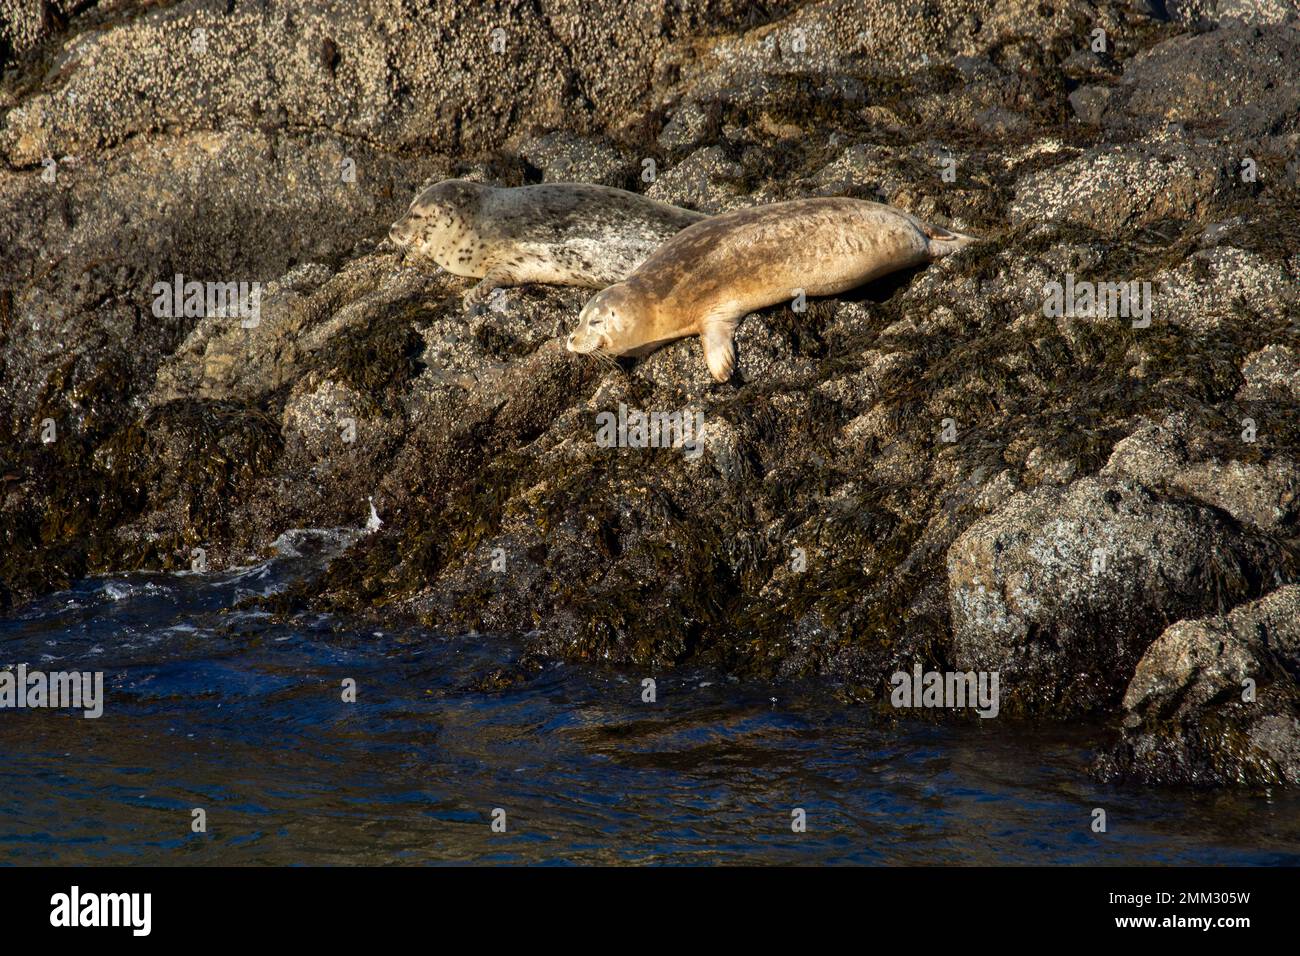 Harbor seals (Phoca vitulina) at Quarry Cove, Yaquina Head Outstanding Natural Area, Newport, Oregon Stock Photo